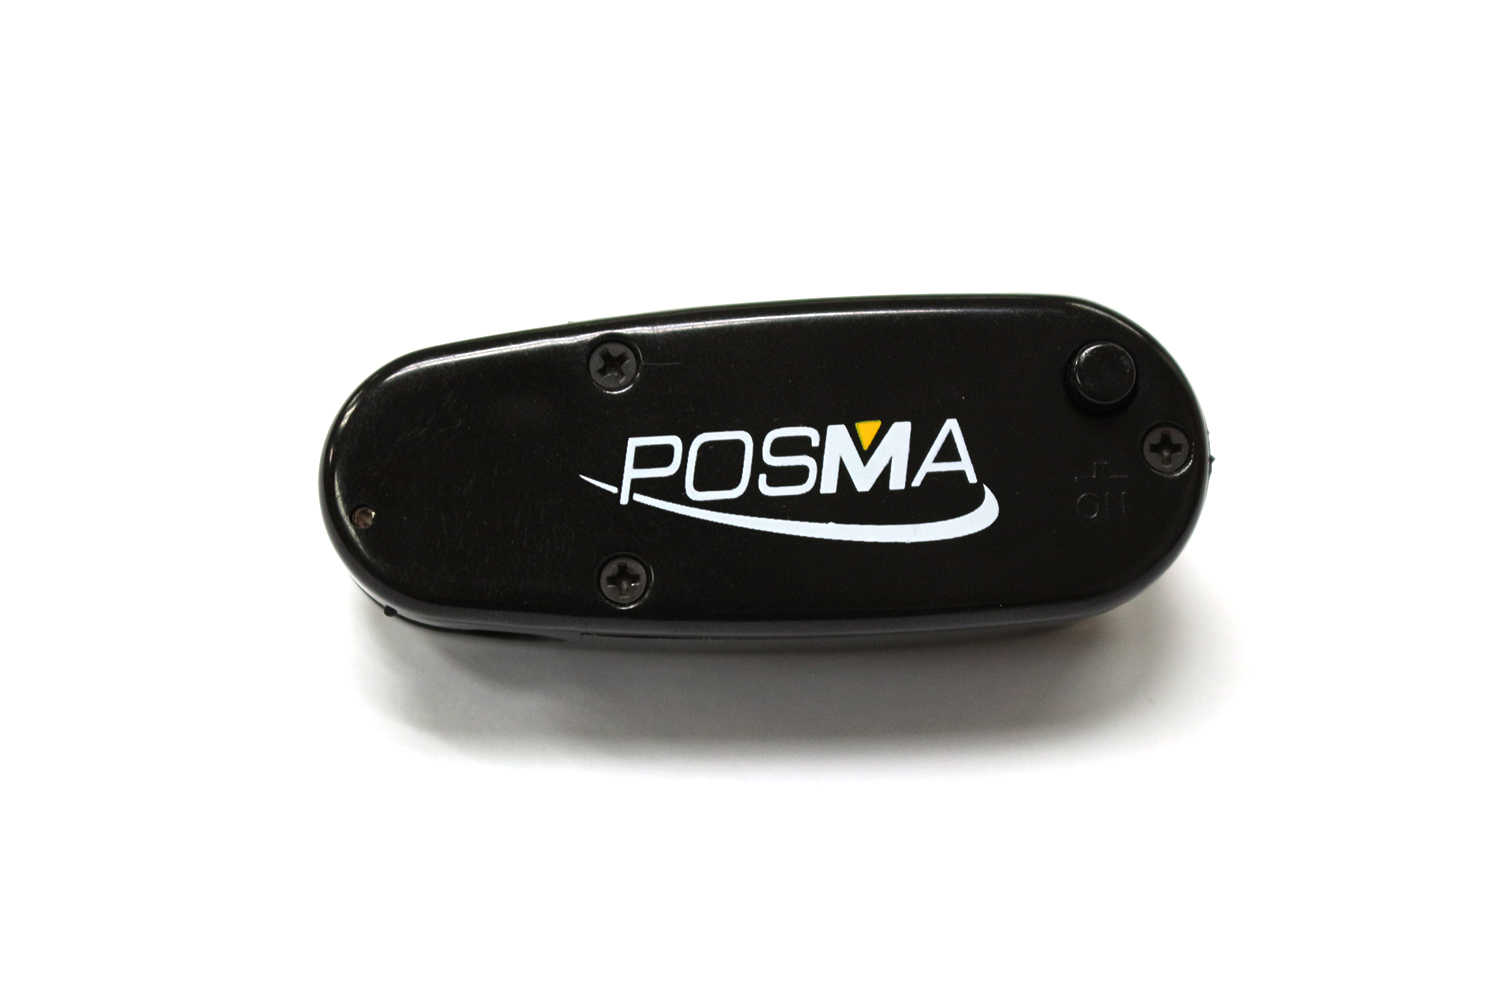 POSMA 高爾夫推桿訓練雷射瞄準器 搭高爾夫4節組裝式球桿 贈 黑色束口收納包 LA010B